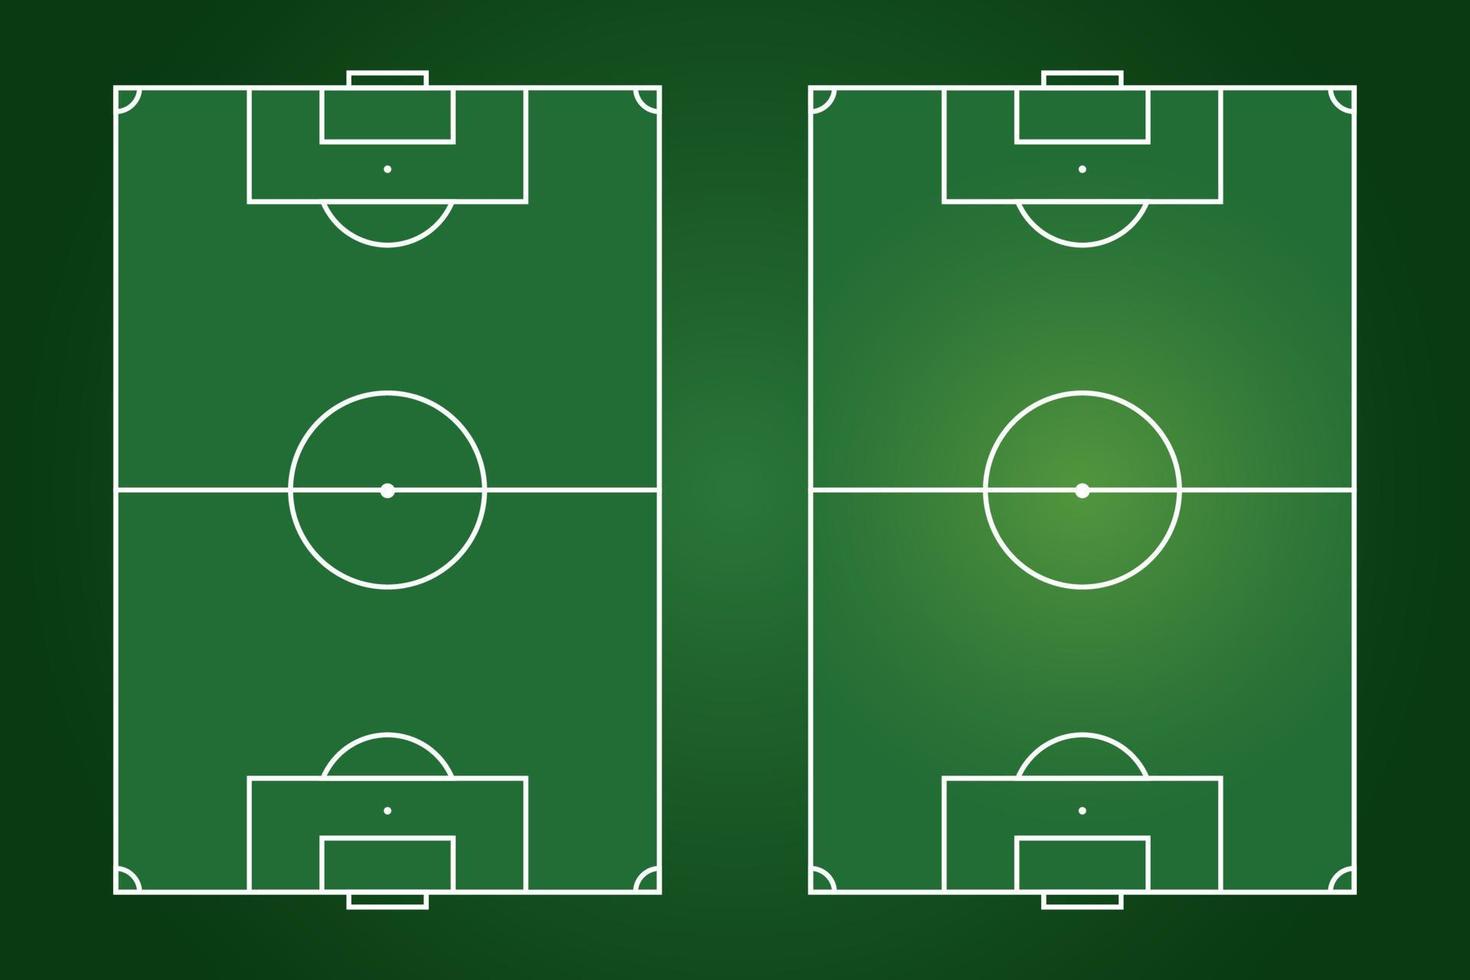 voetbalveld plat ontwerp, voetbalveld grafische illustratie, vector van voetbalveld en lay-out.